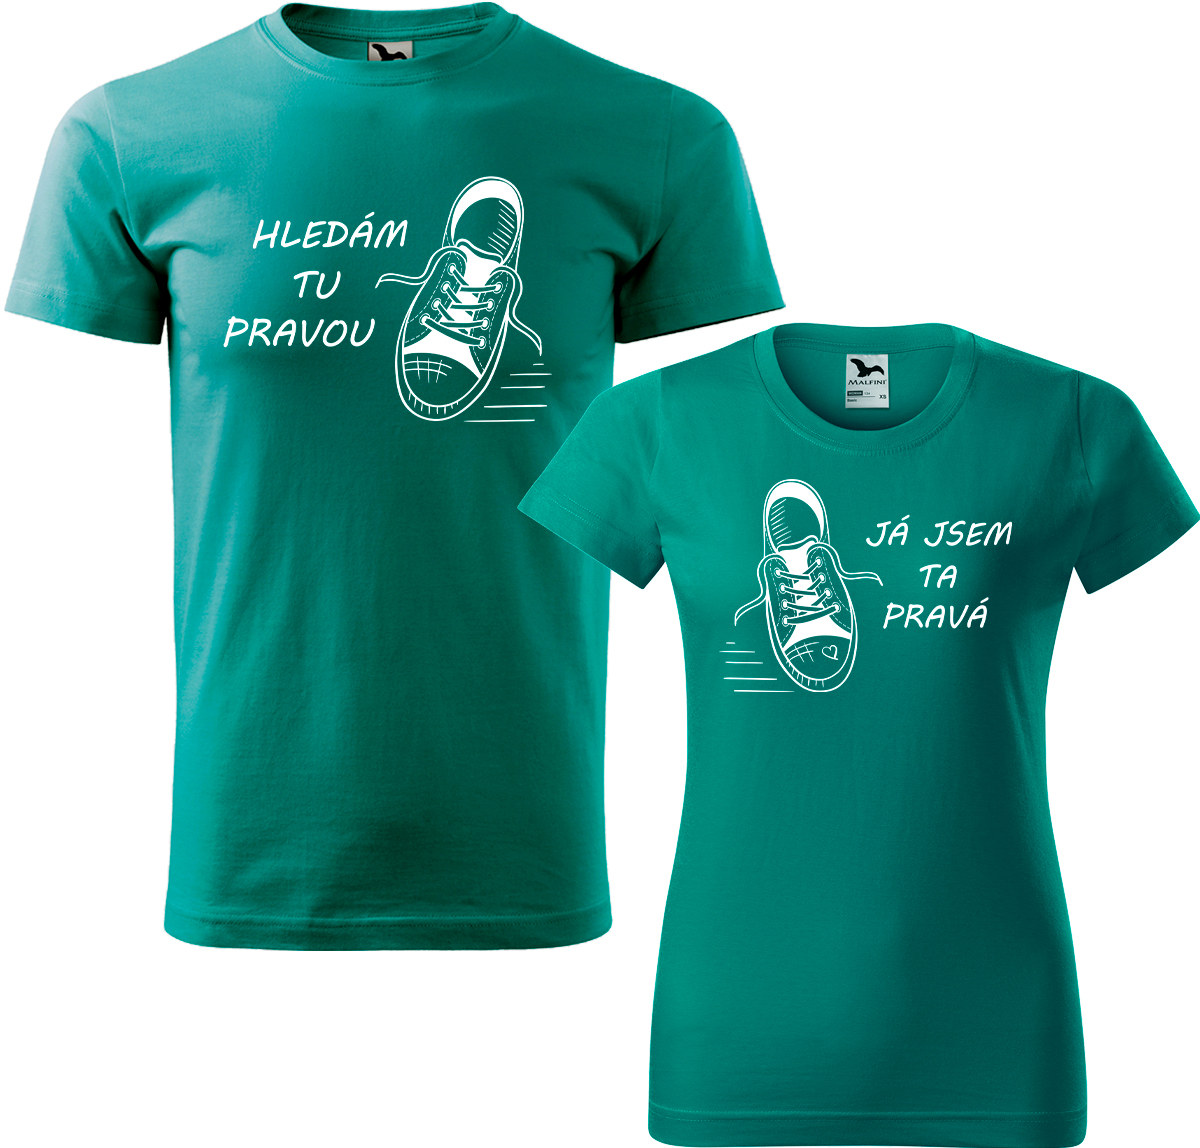 Trička pro páry - Kecky Barva: Emerald (19), Velikost dámské tričko: M, Velikost pánské tričko: M